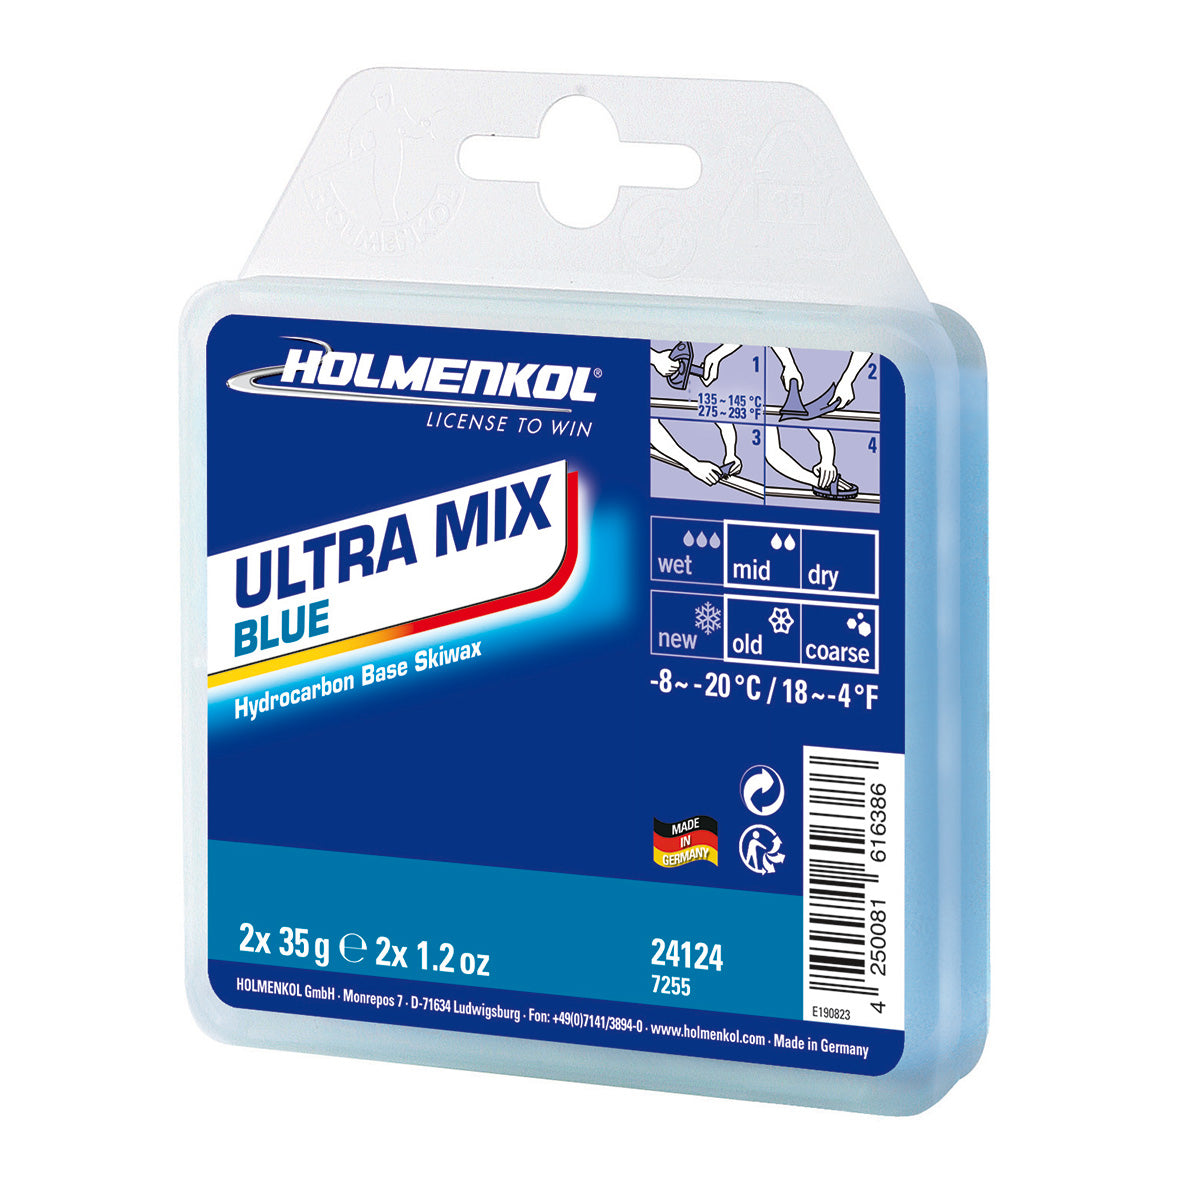 Holmenkol Ultra Mix Blue 2x35g